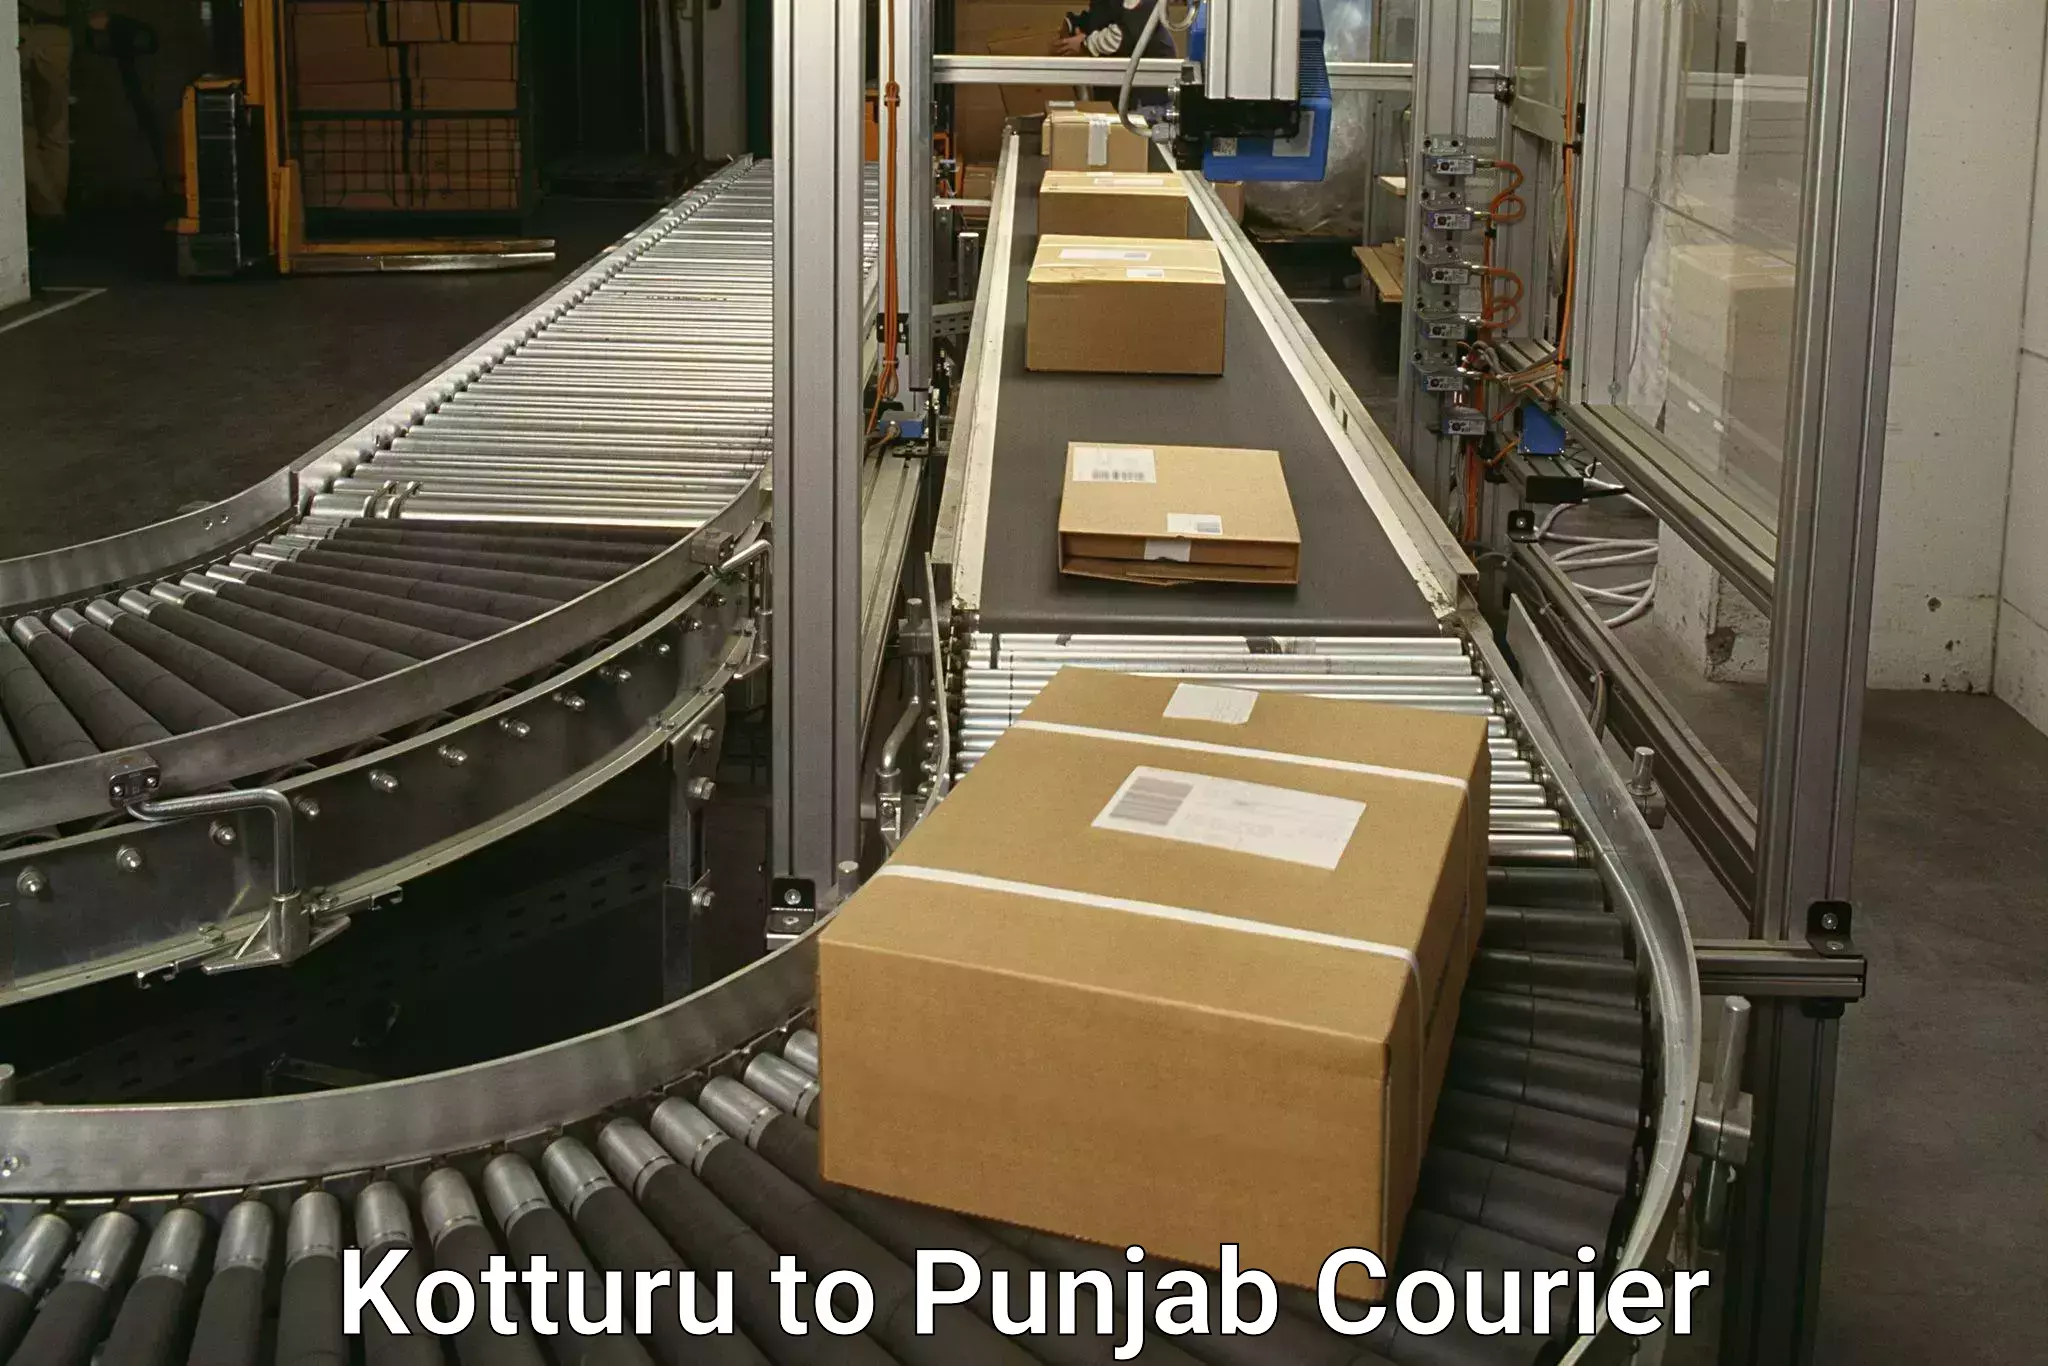 International parcel service Kotturu to Amritsar